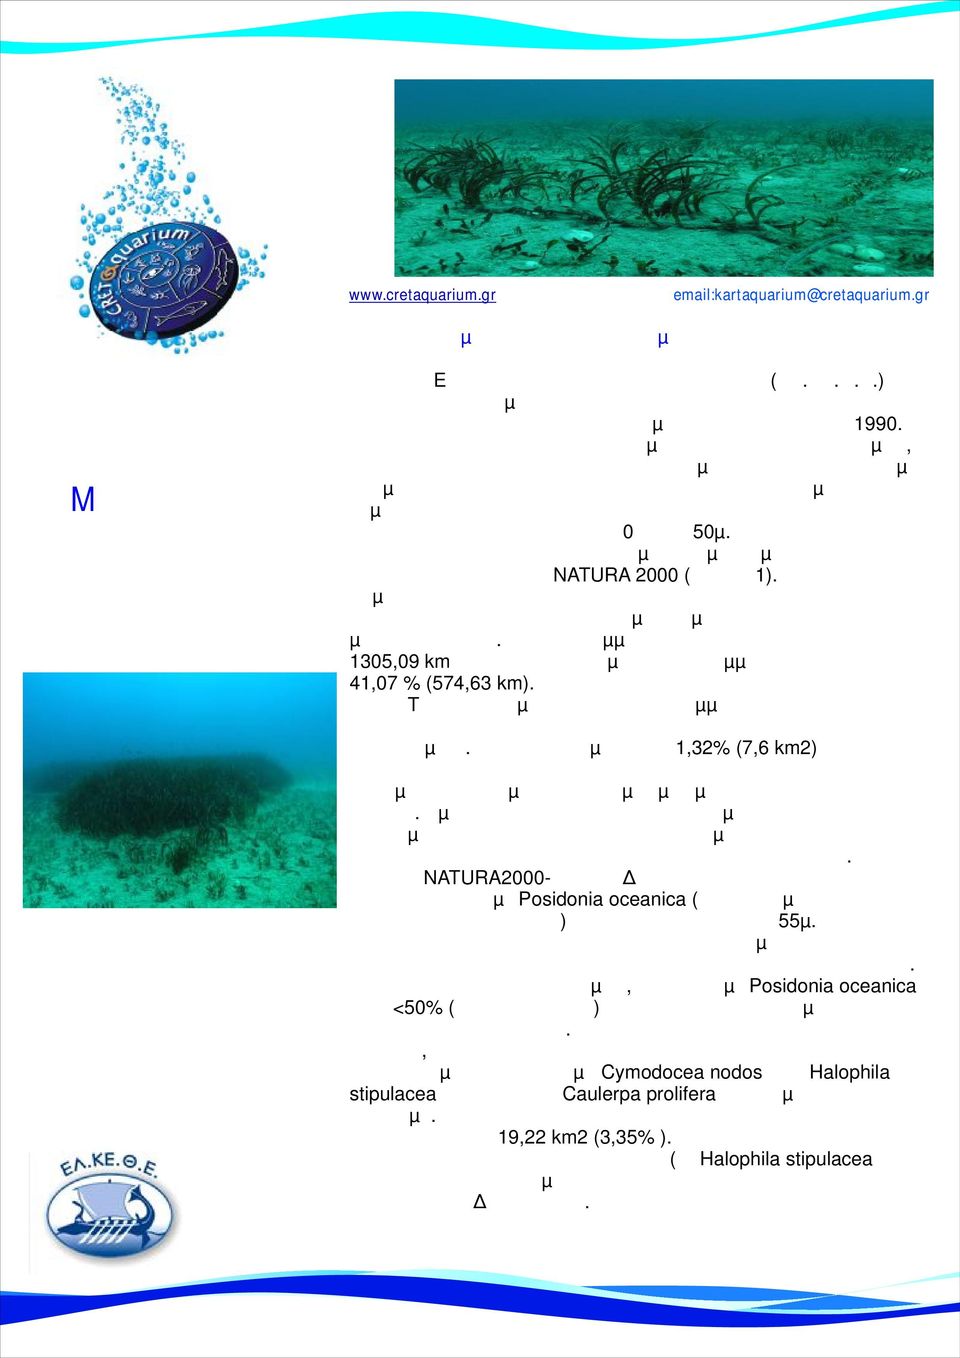 χάρτες βυθού που απεικονίζουν τους θαλάσσιους οικότοπους από τα 0 ως τα 50µ. περίπου βάθος σε διάφορες περιοχές της Κρήτης συµπεριλαµβανοµένων και του συνόλου των περιοχών NATURA 2000 (χάρτης 1).